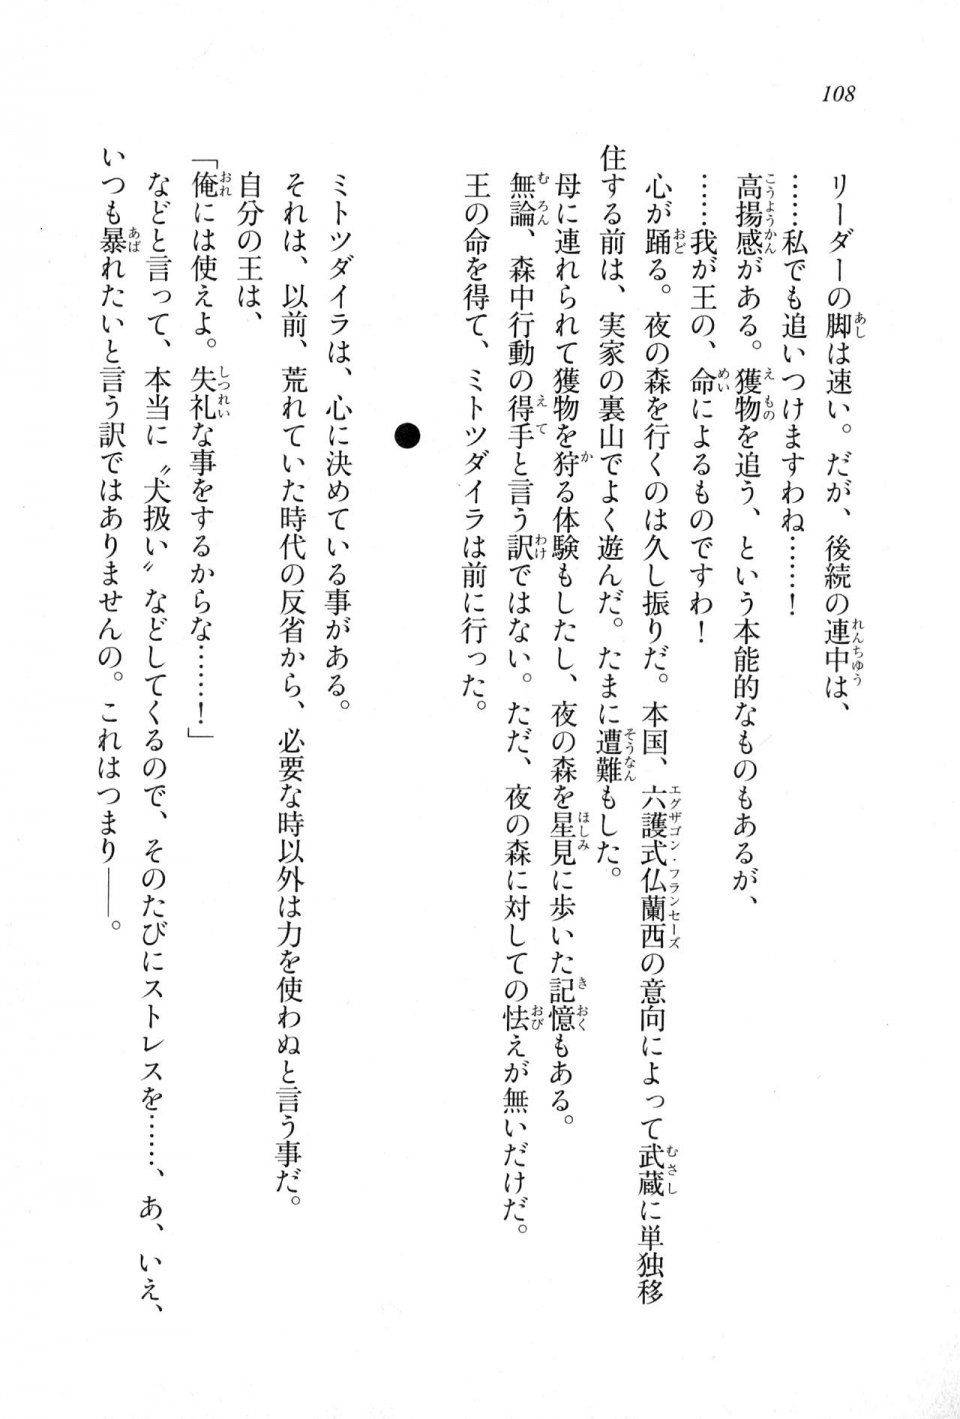 Kyoukai Senjou no Horizon LN Sidestory Vol 1 - Photo #106